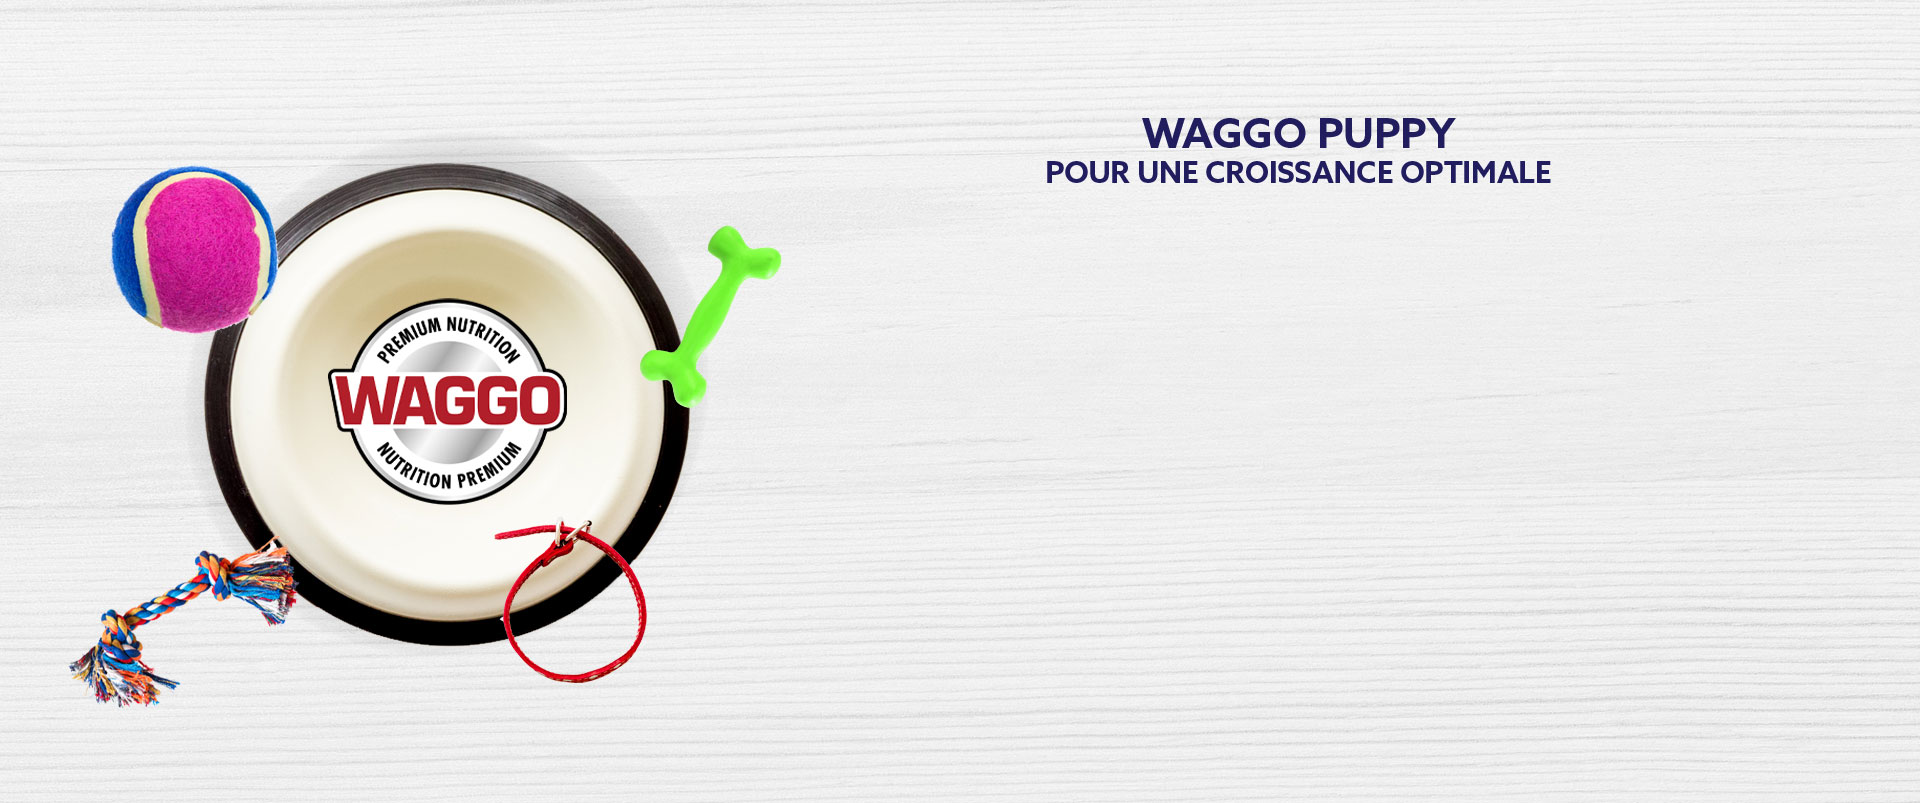 waggo_dog_food